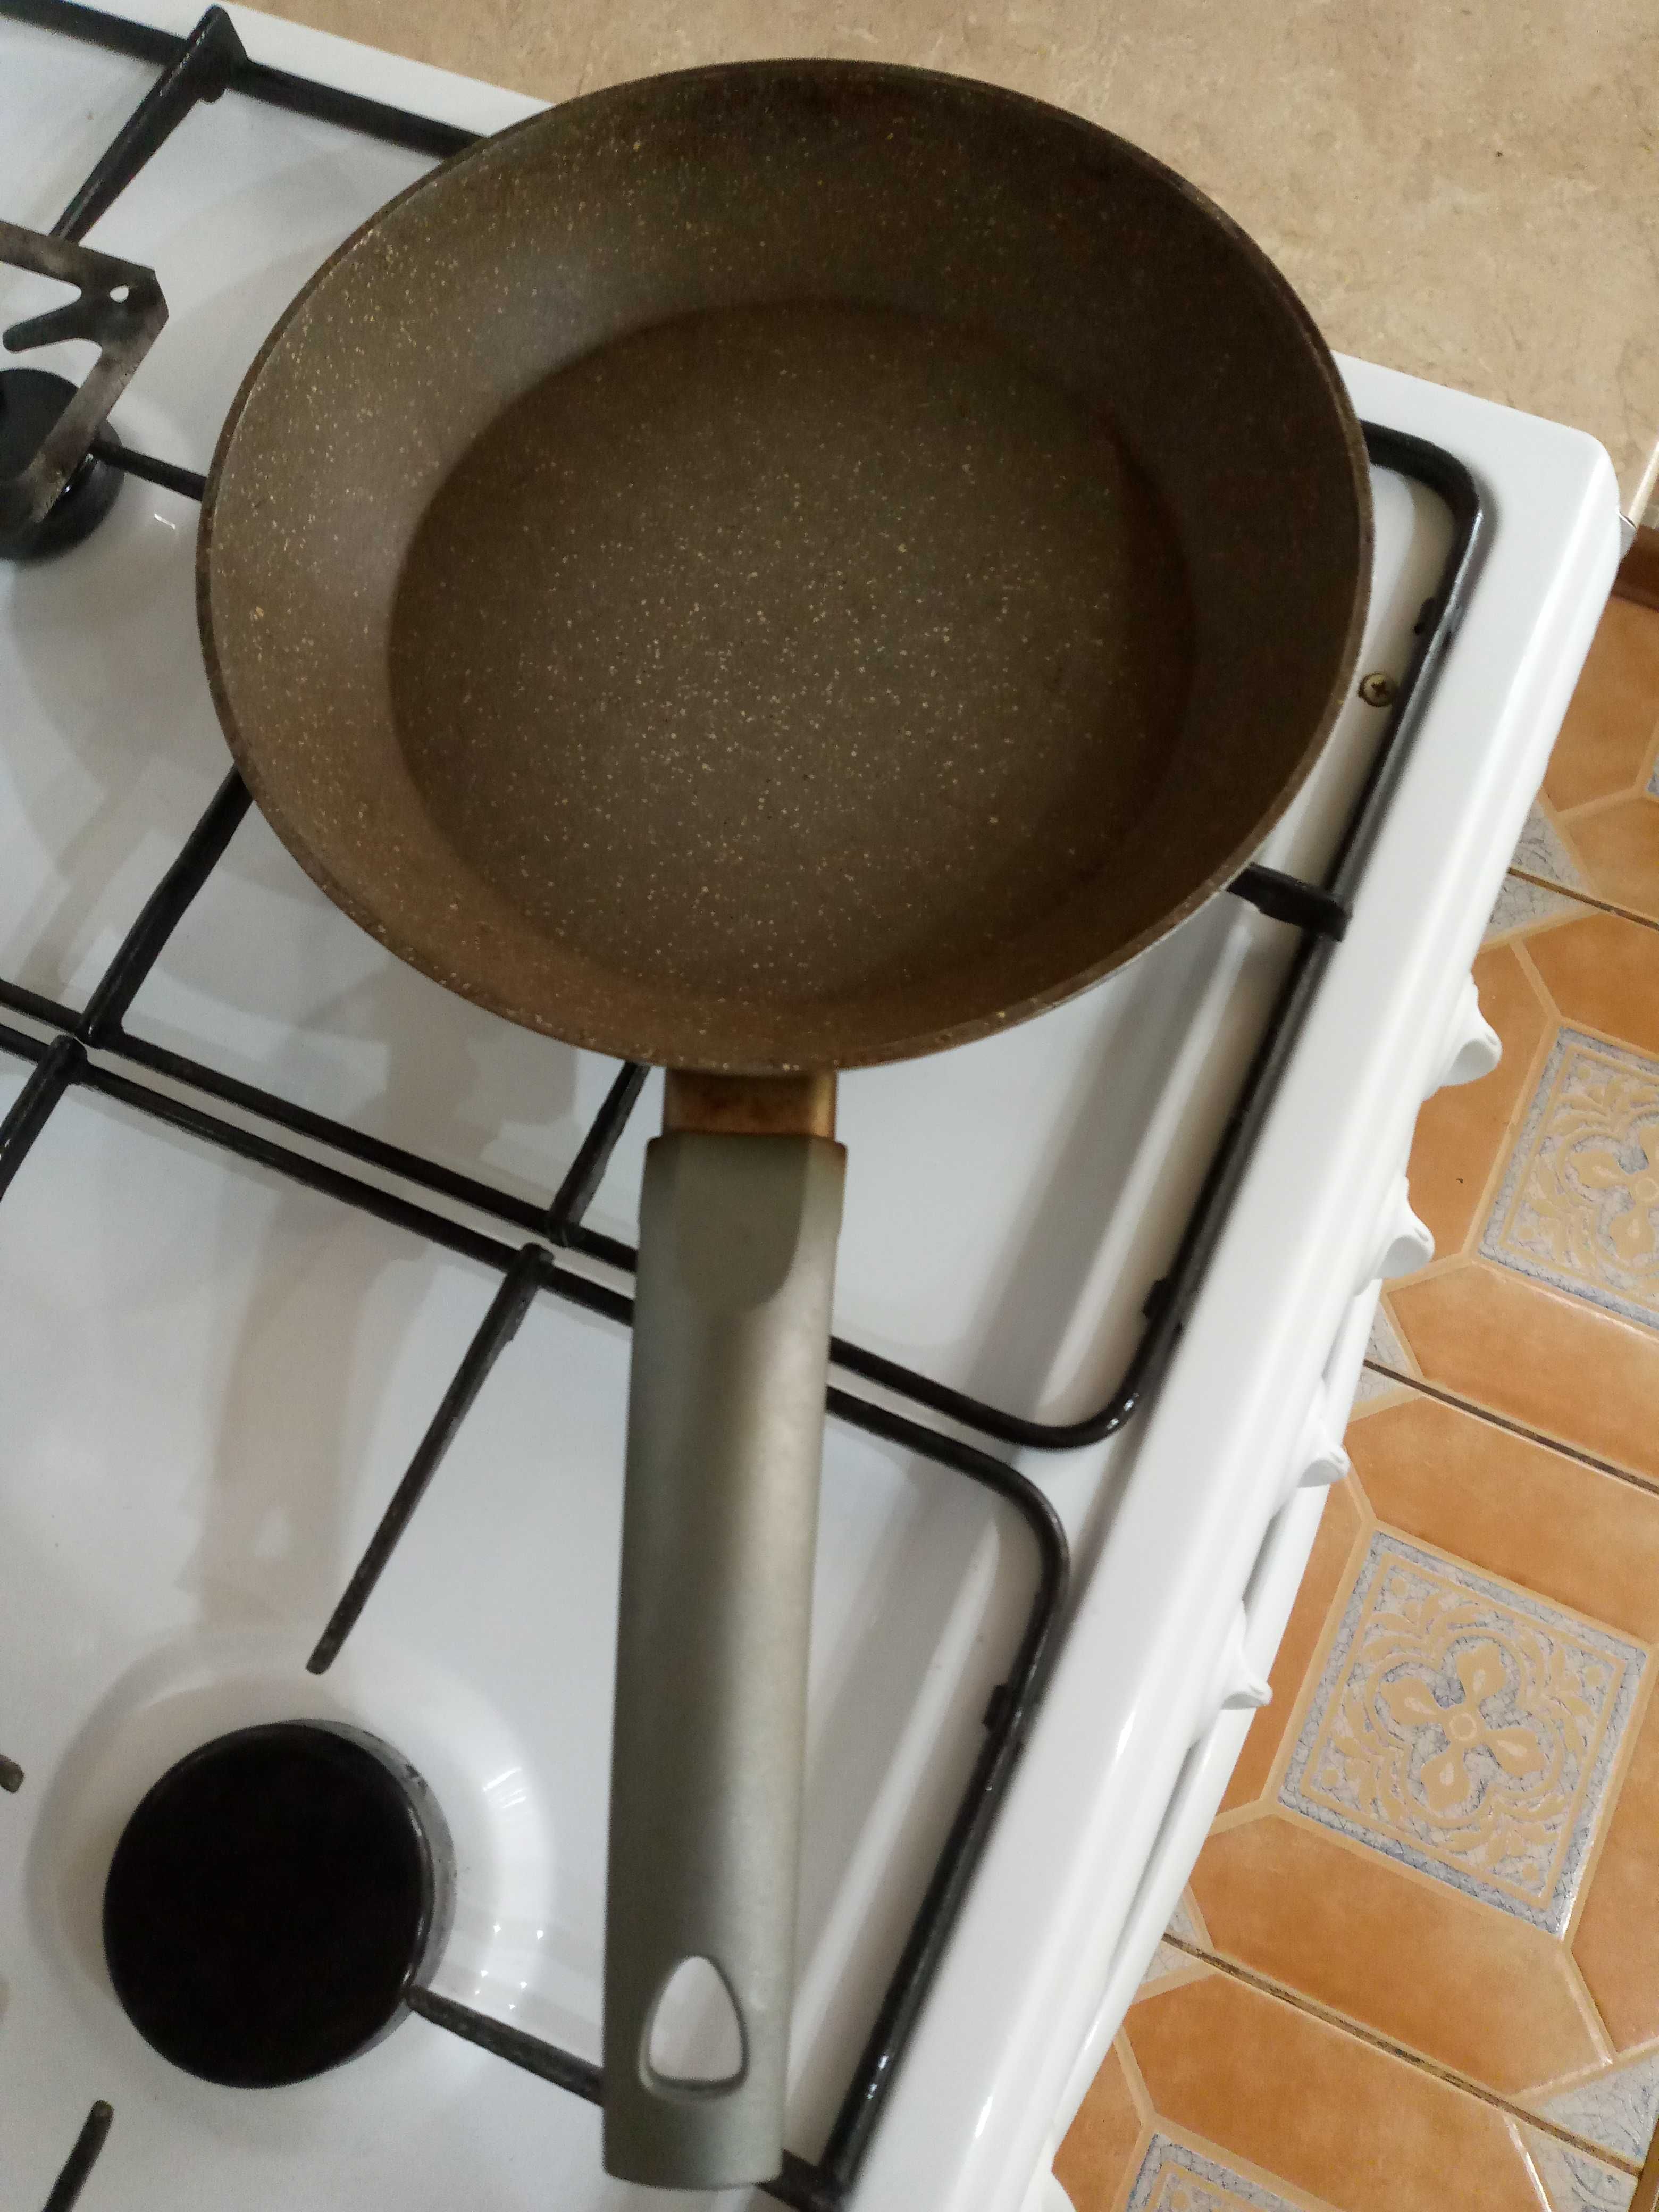 Cковородка антипригарная с покрытием гранит размер 24 см+посуда